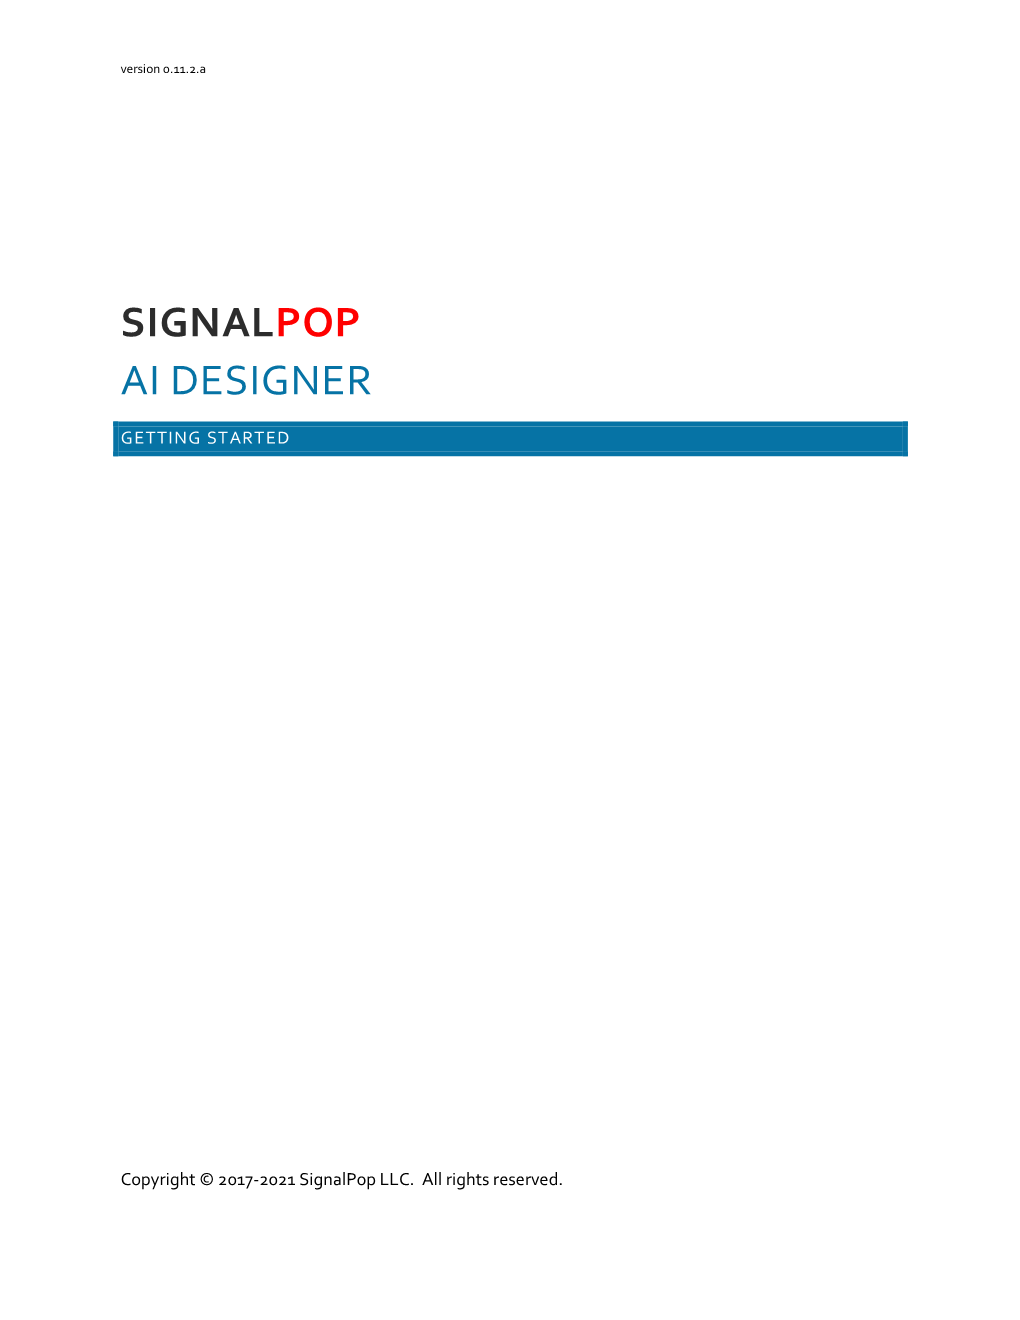 Signalpop Ai Designer